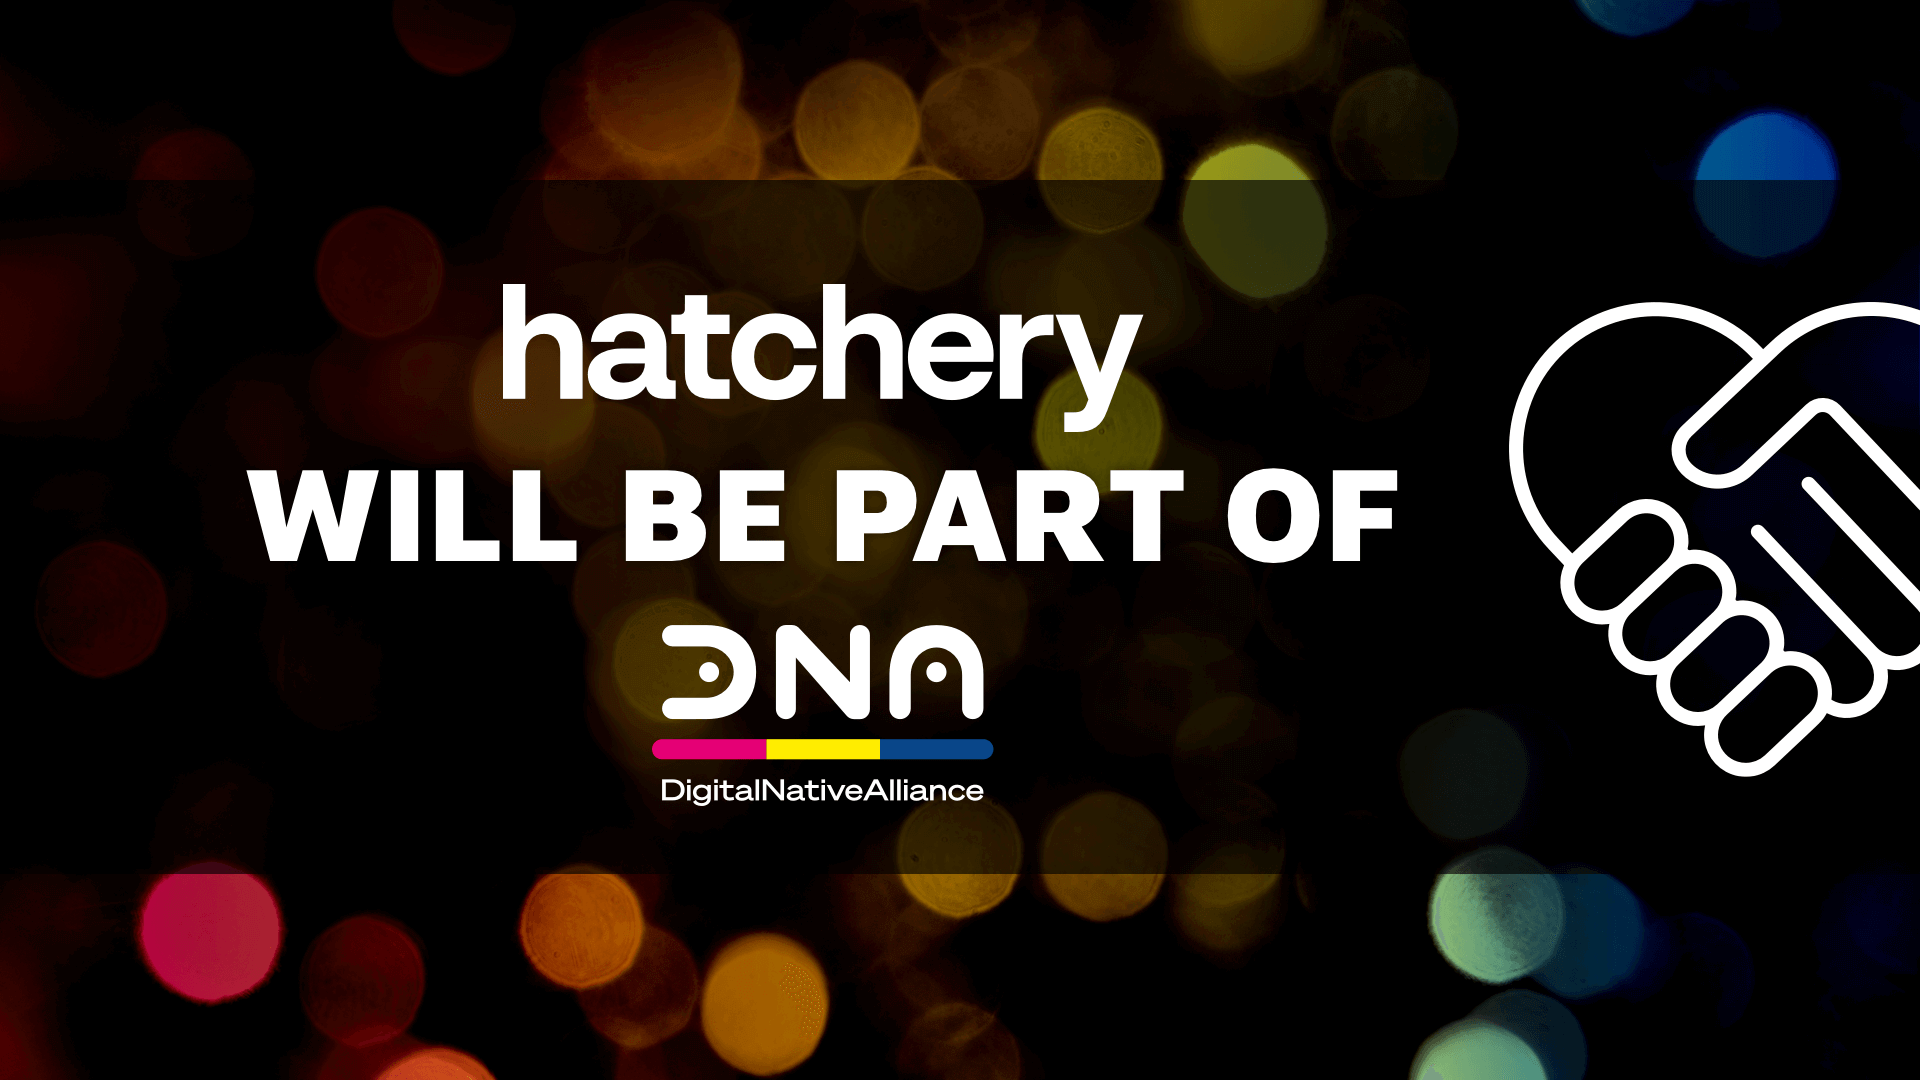 Hatchery ist Teil der DigitalNativeAlliance